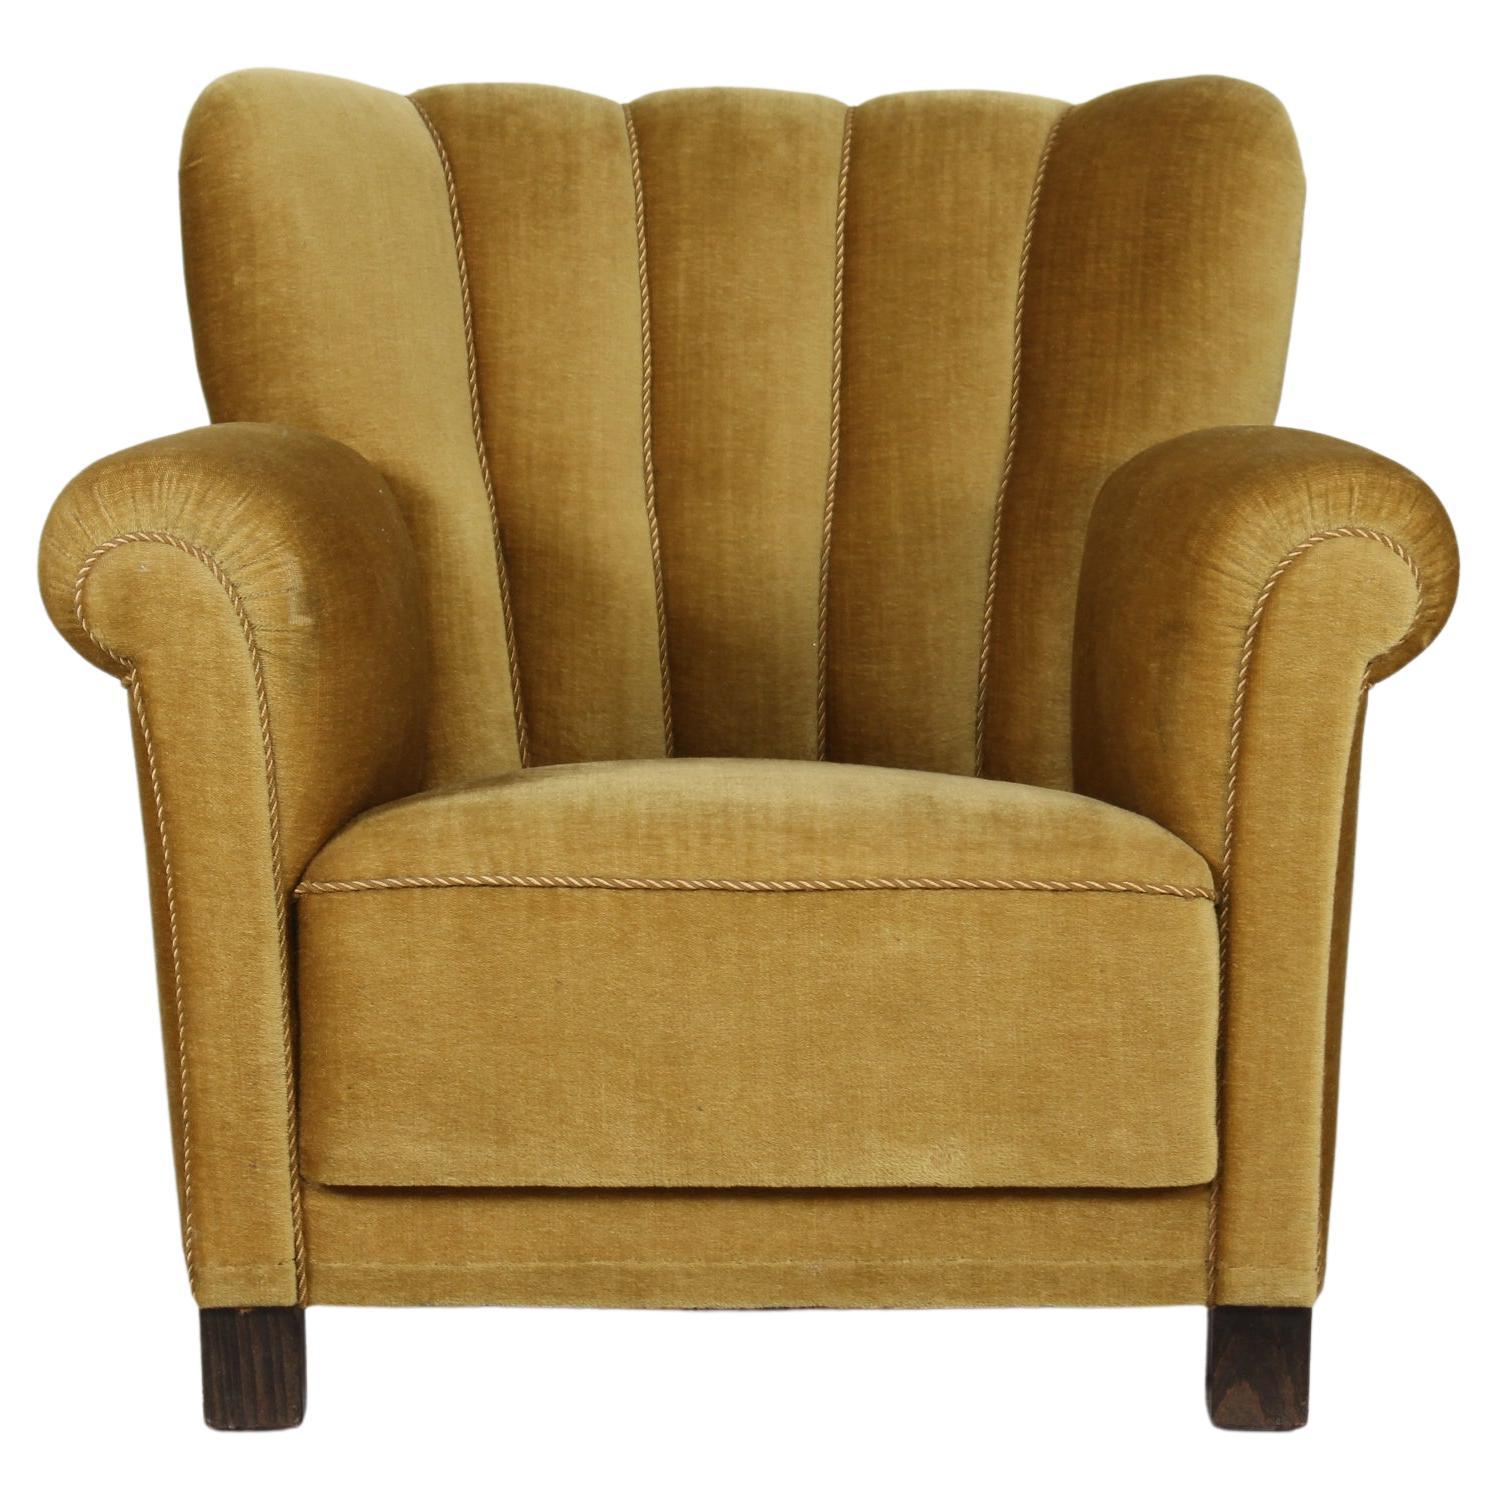 Art Deco Lounge Chair Fritz Hansen Style Olive Green Velvet, Denmark 1930s-1940s For Sale